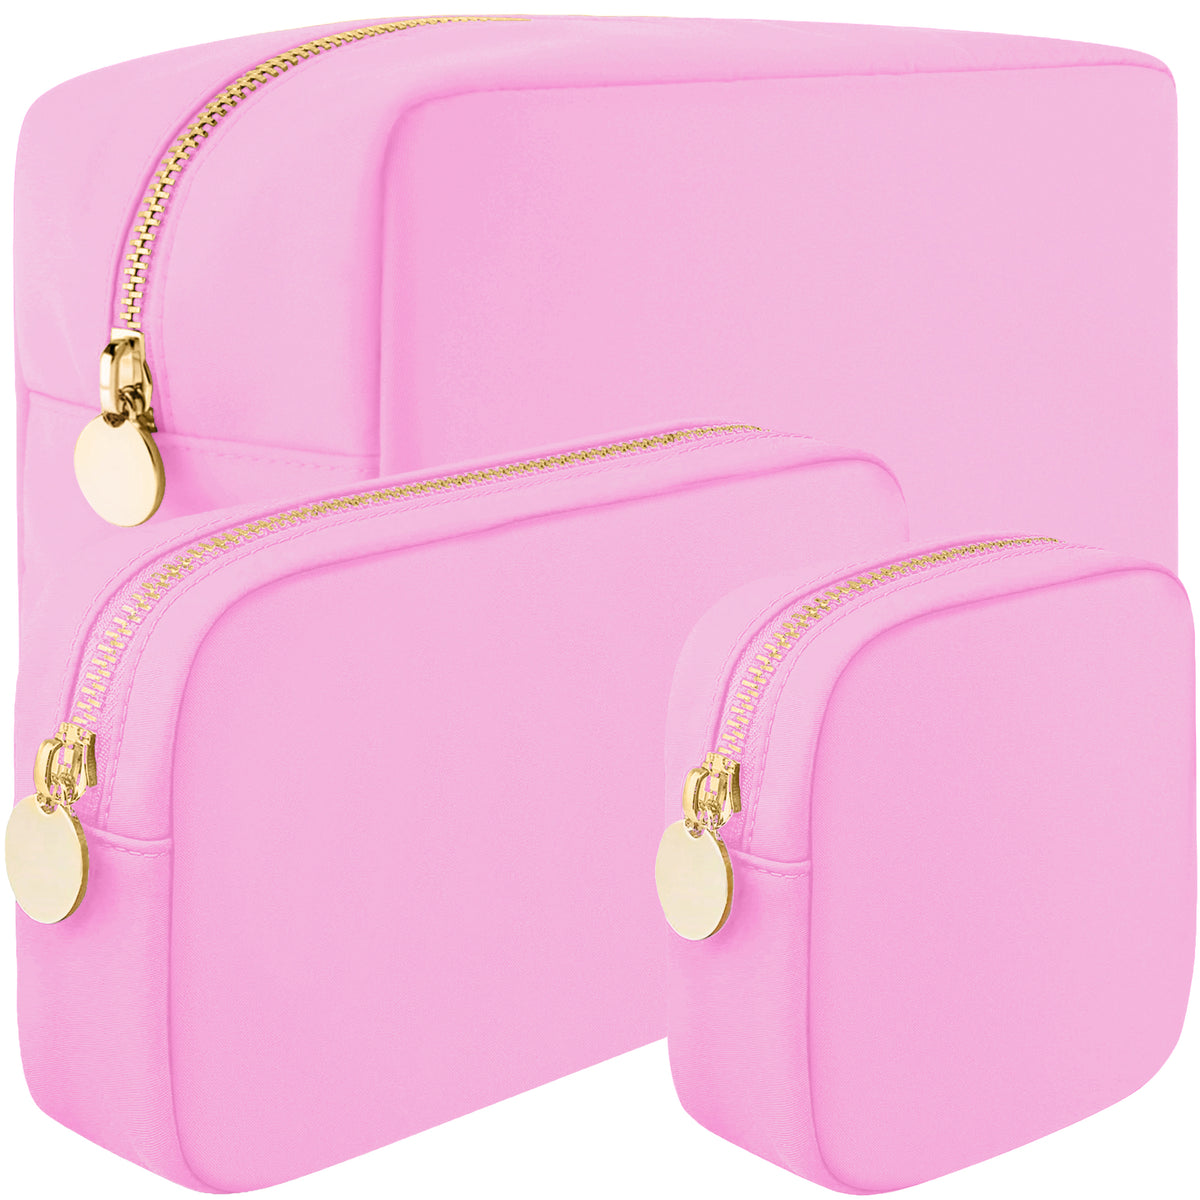 3 Piece Makeup Bag Set Mini, Small & Large Cosmetic Bags - Light Pink